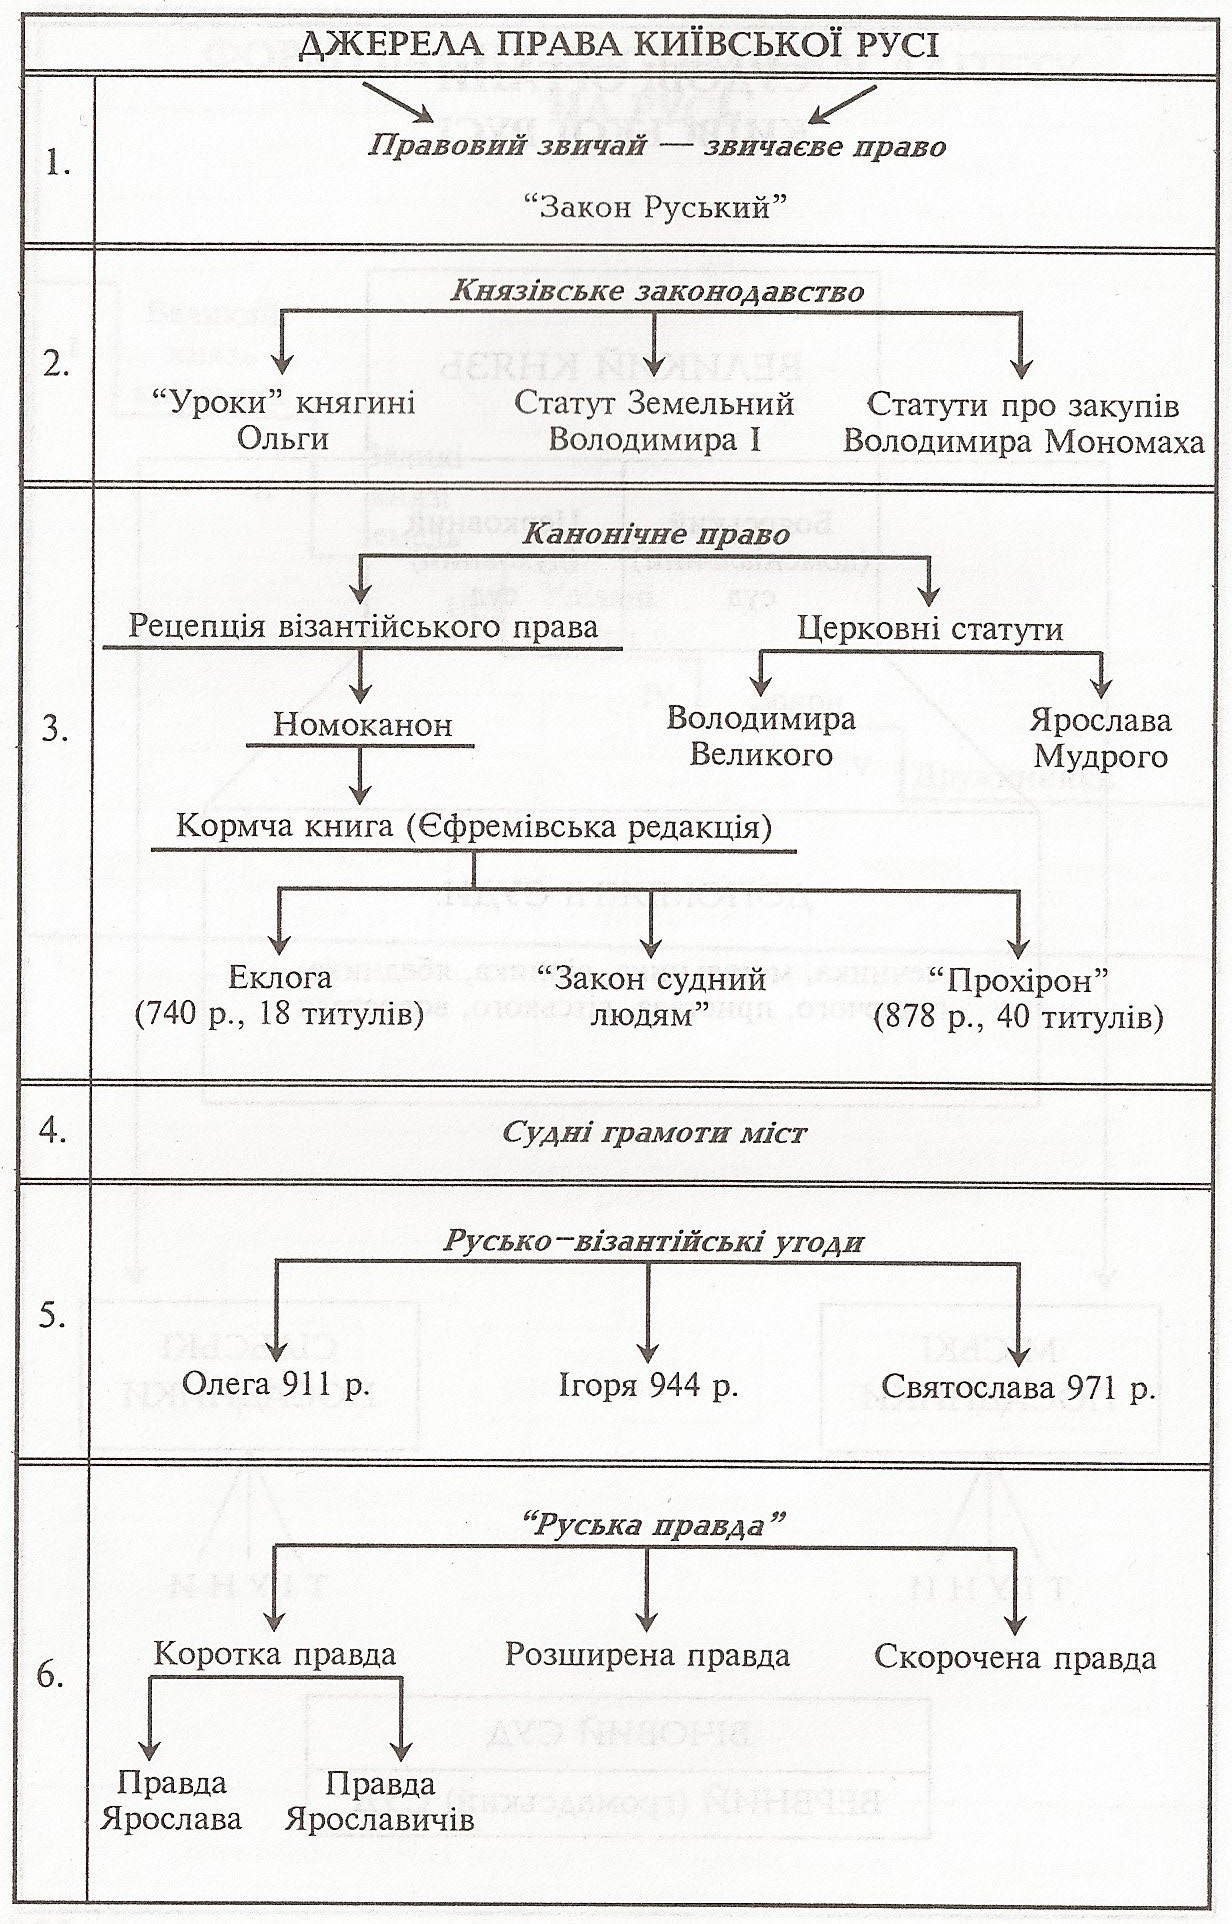 Таблица: Источники права Древней Руси